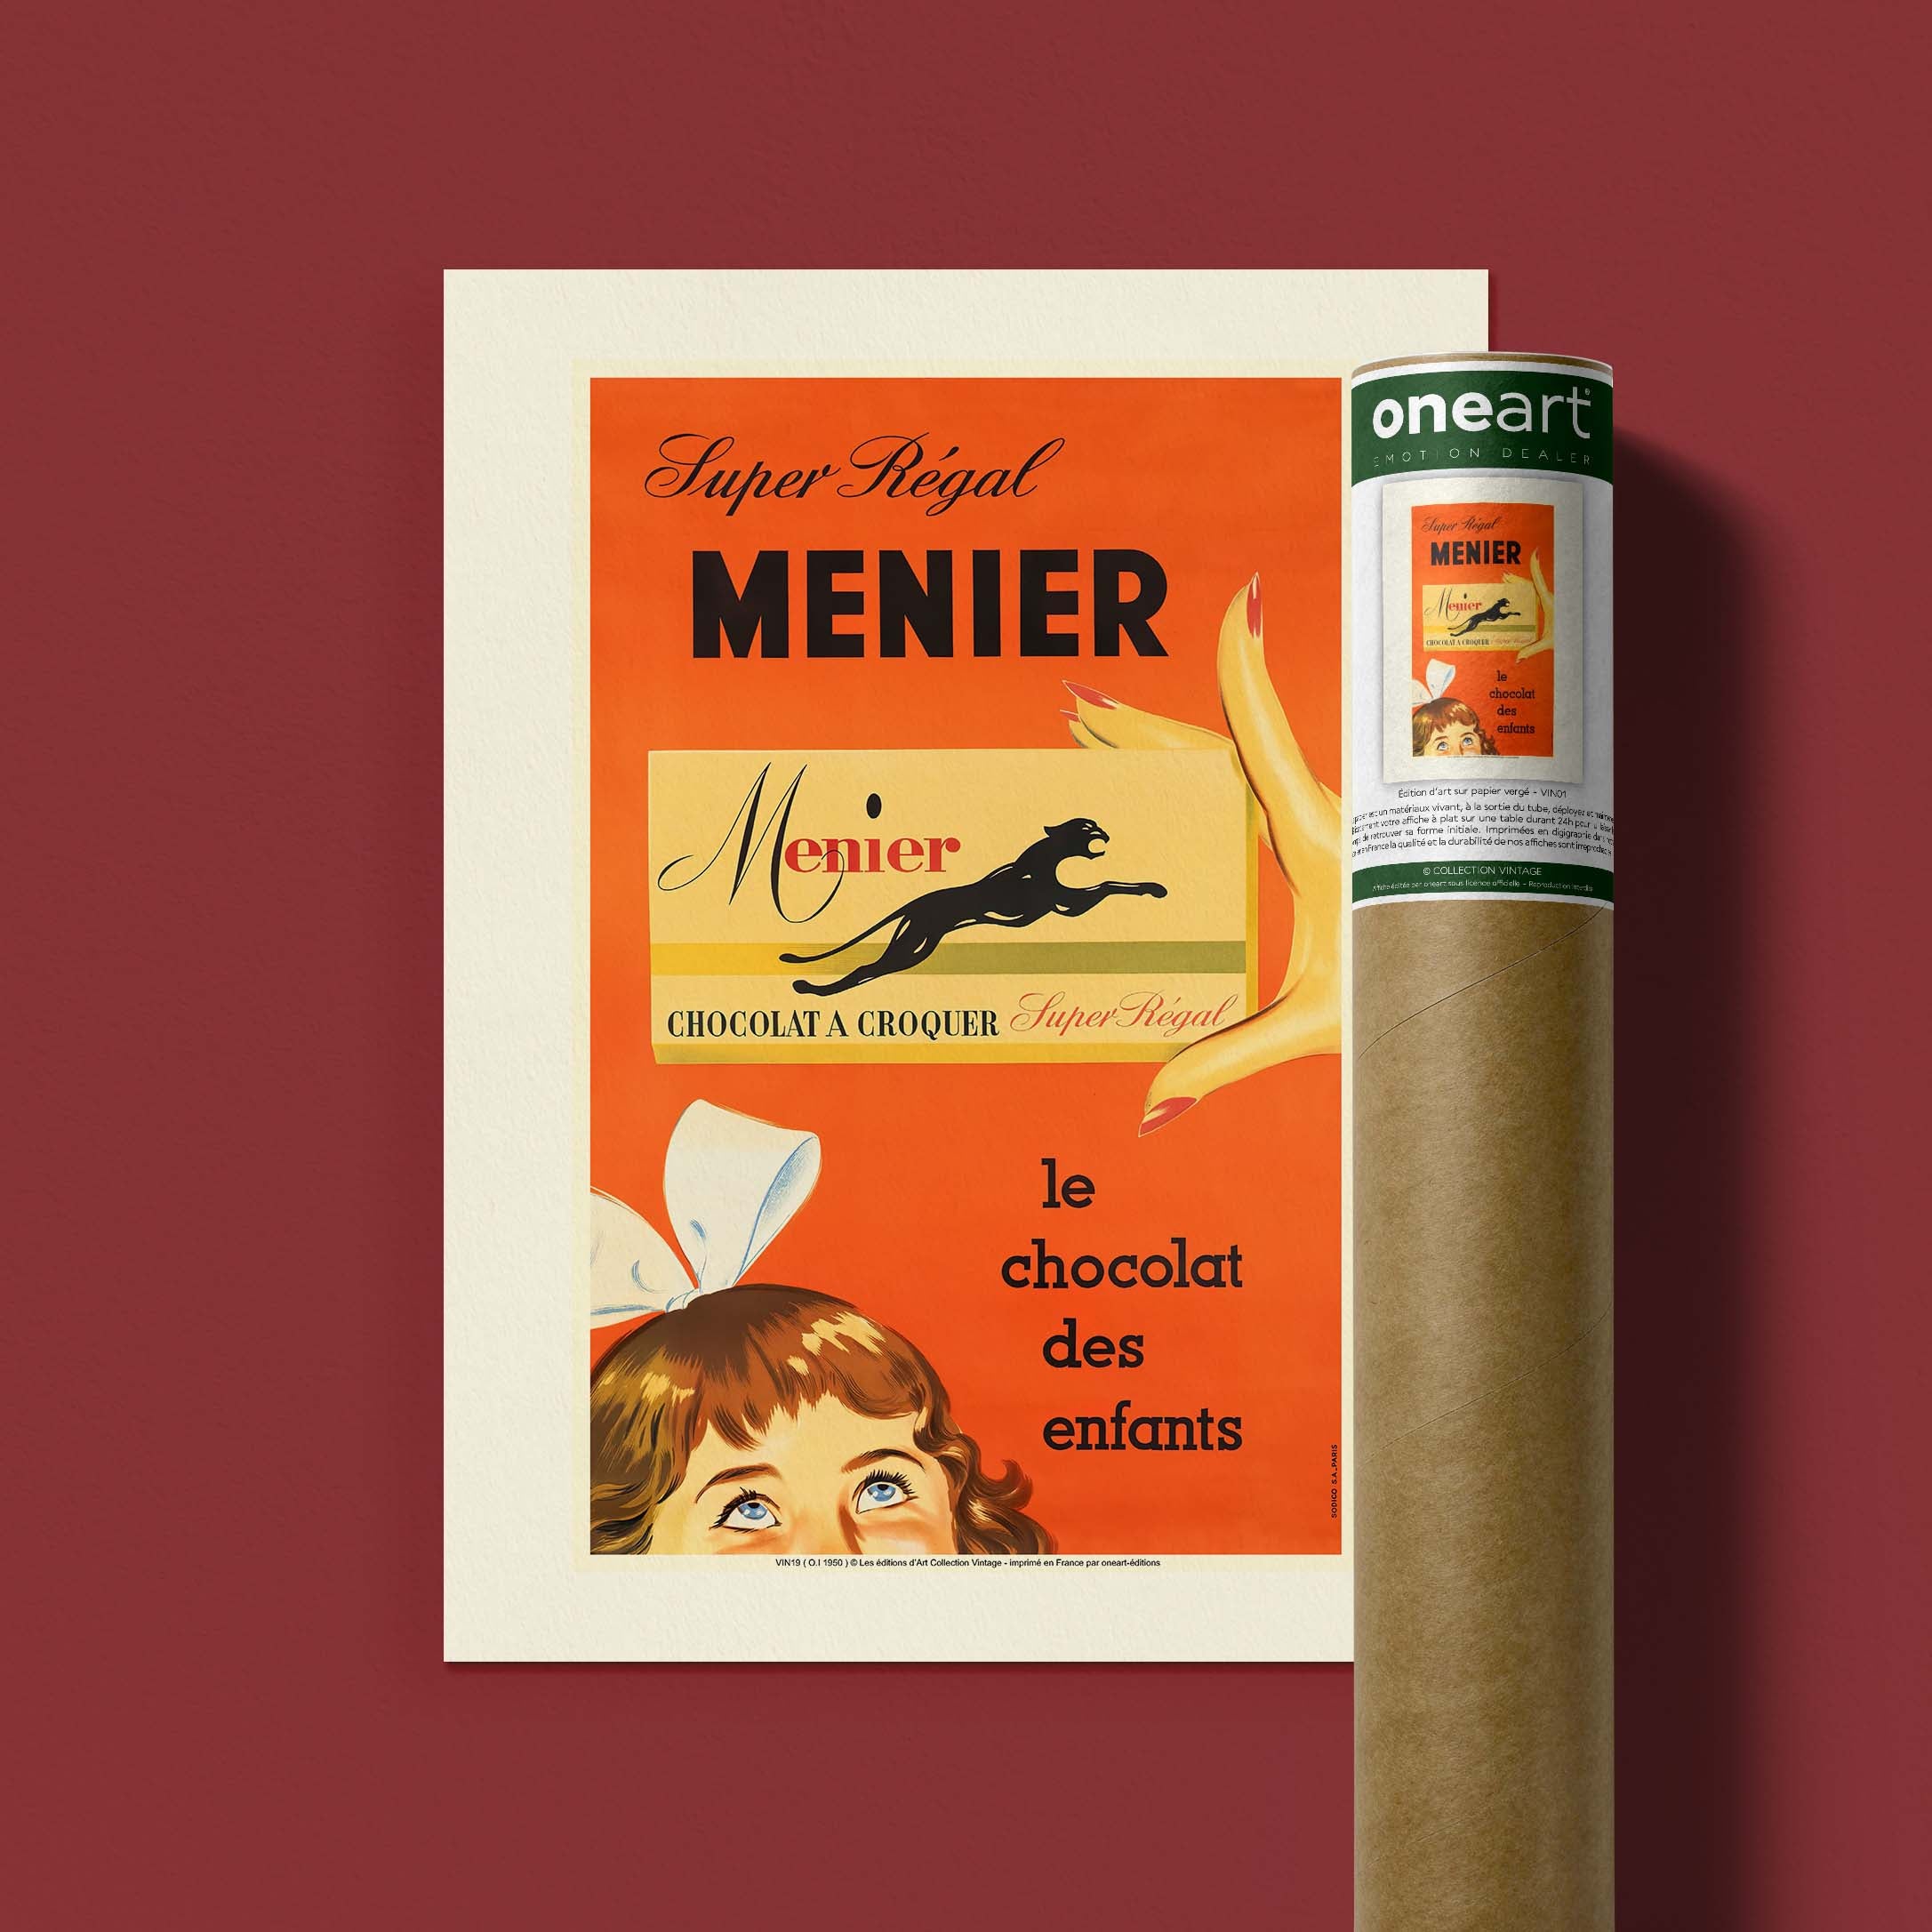 Affiche publicité vintage - Menier-oneart.fr